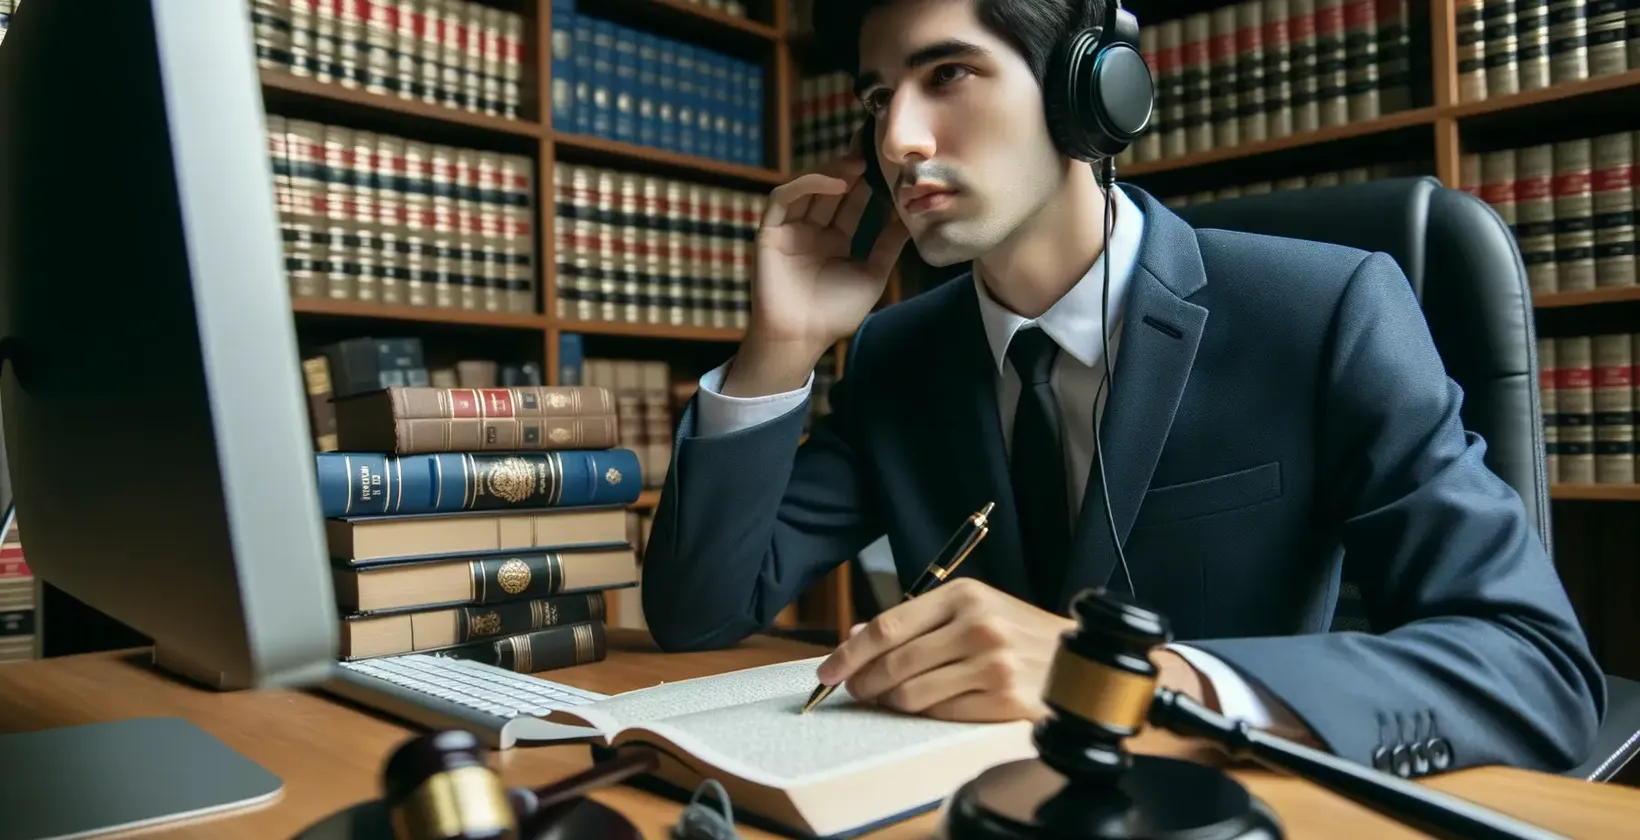 Juristische Transkriptionsdienste, die von einem Fachmann mit Kopfhörern in einer juristischen Bibliothek vorgestellt werden.